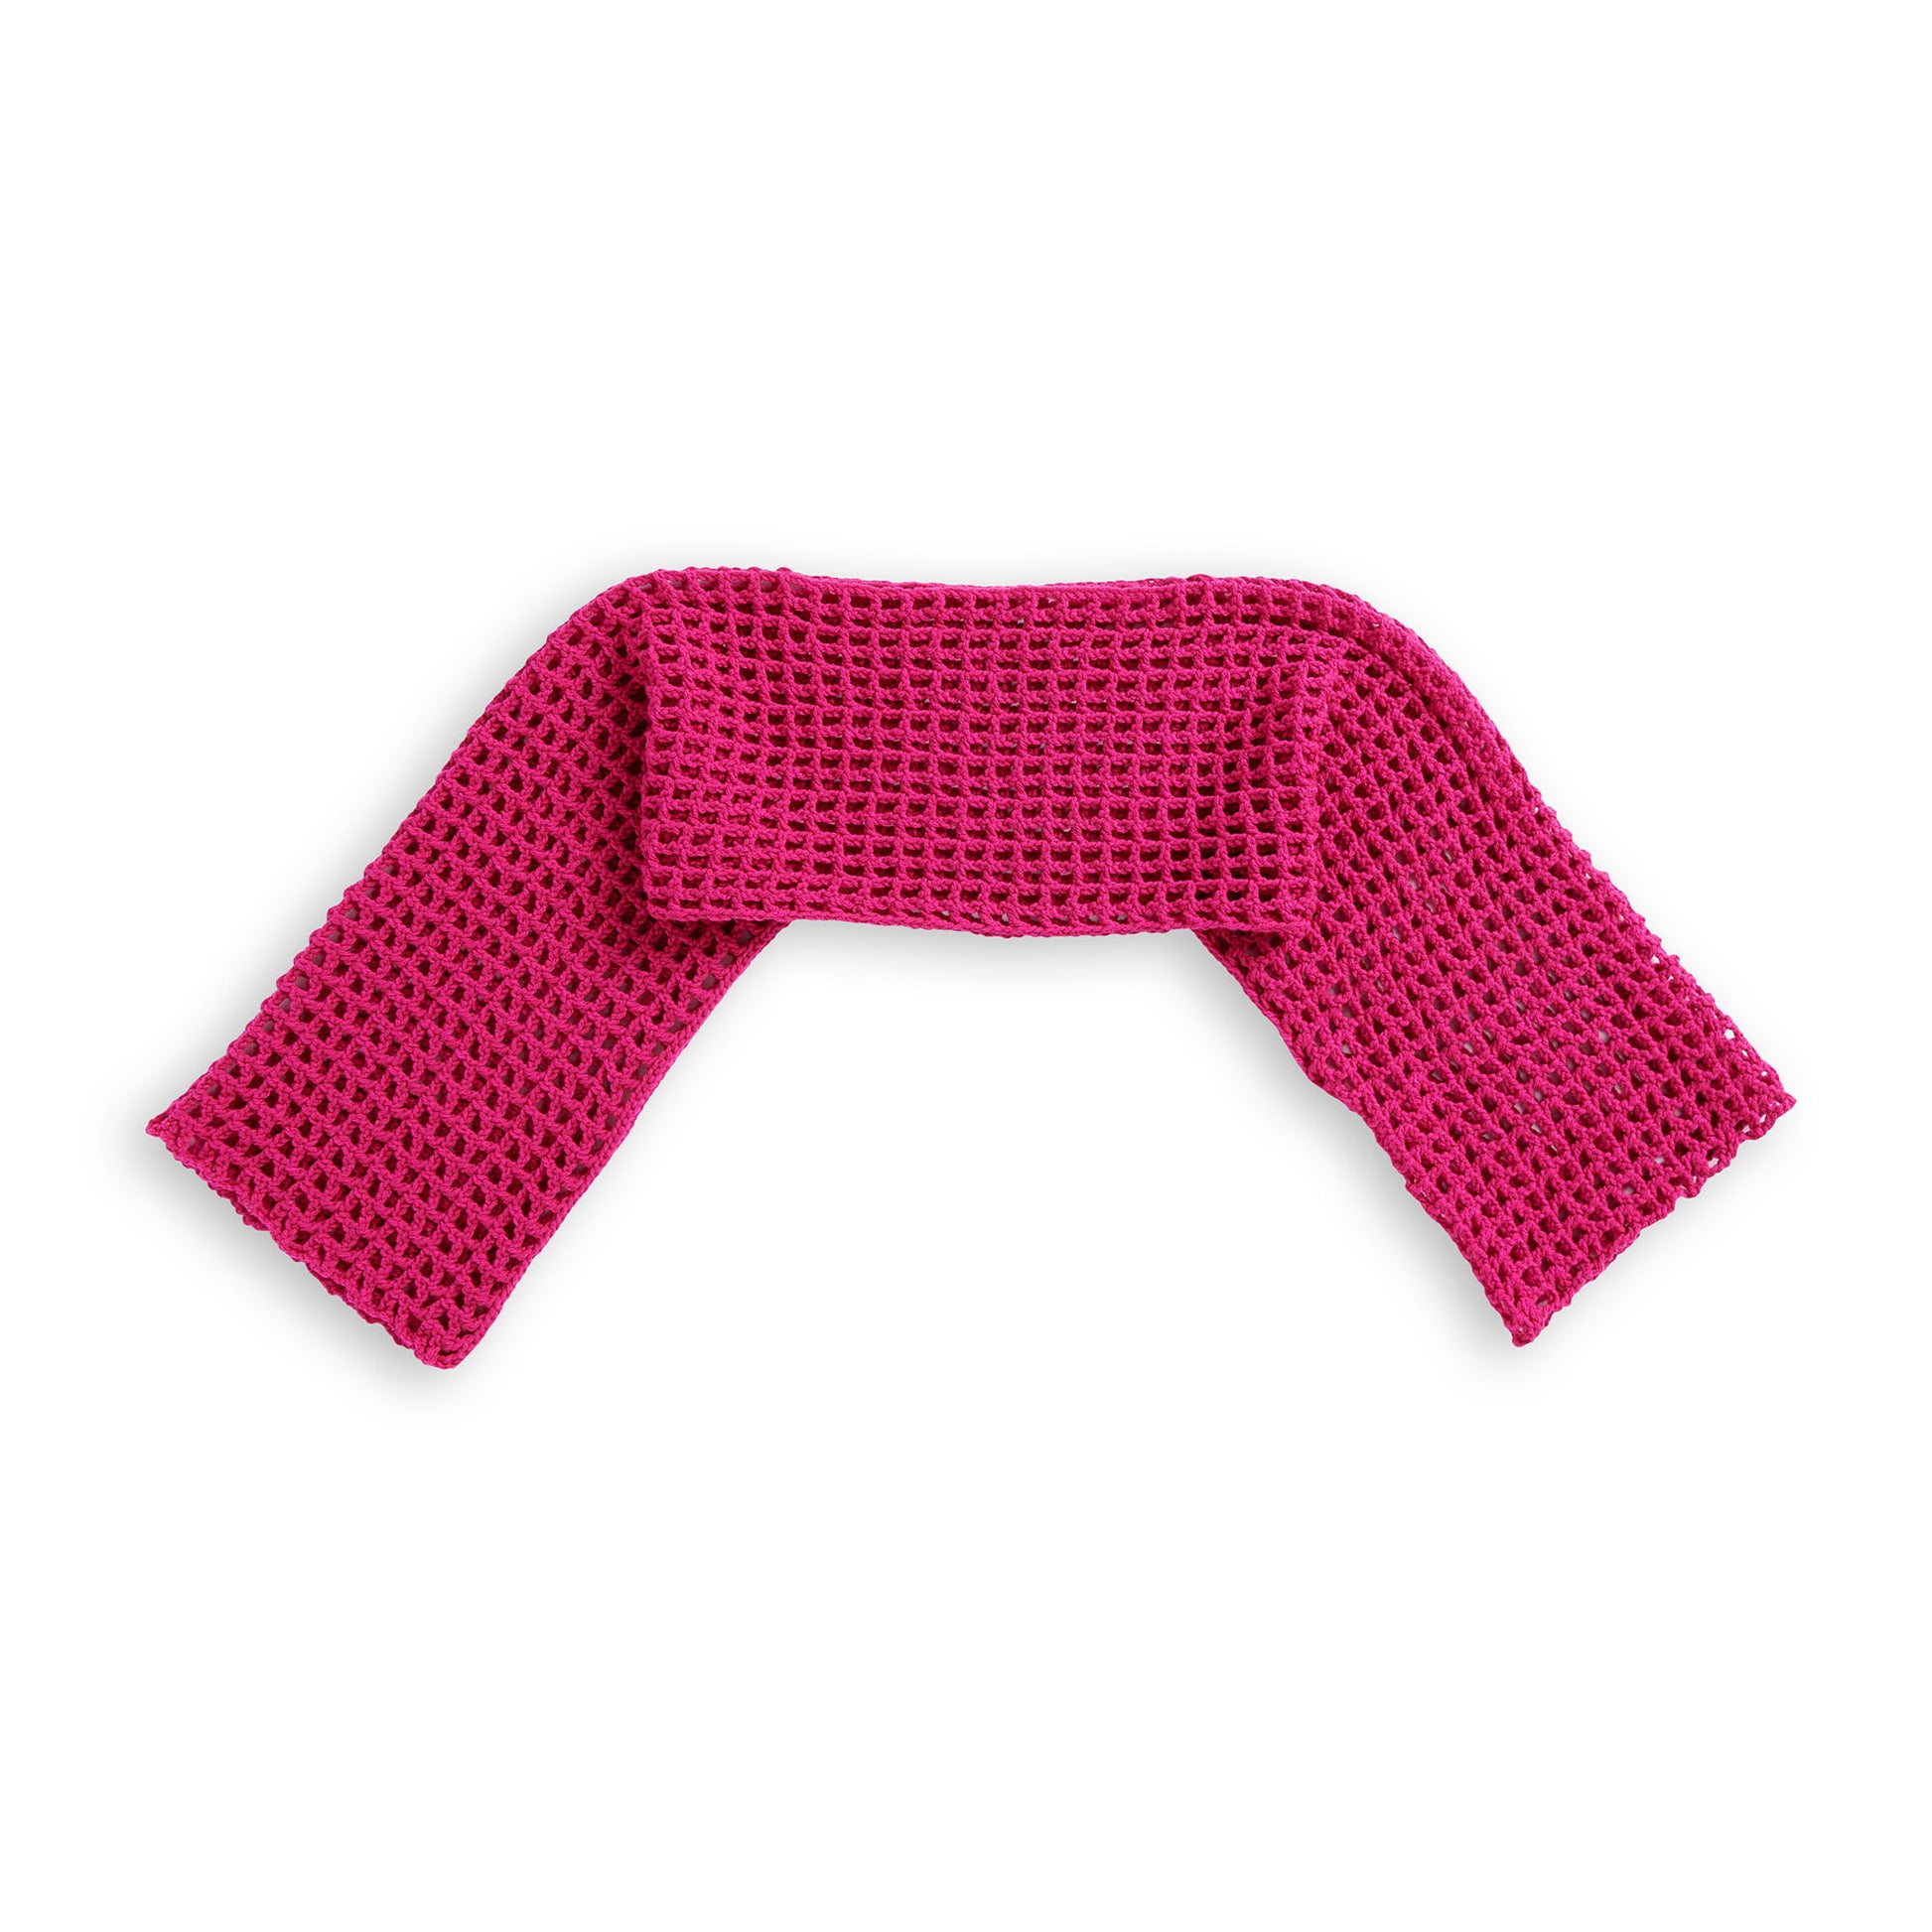 Red Heart Crochet Mesh Shrug All Variants